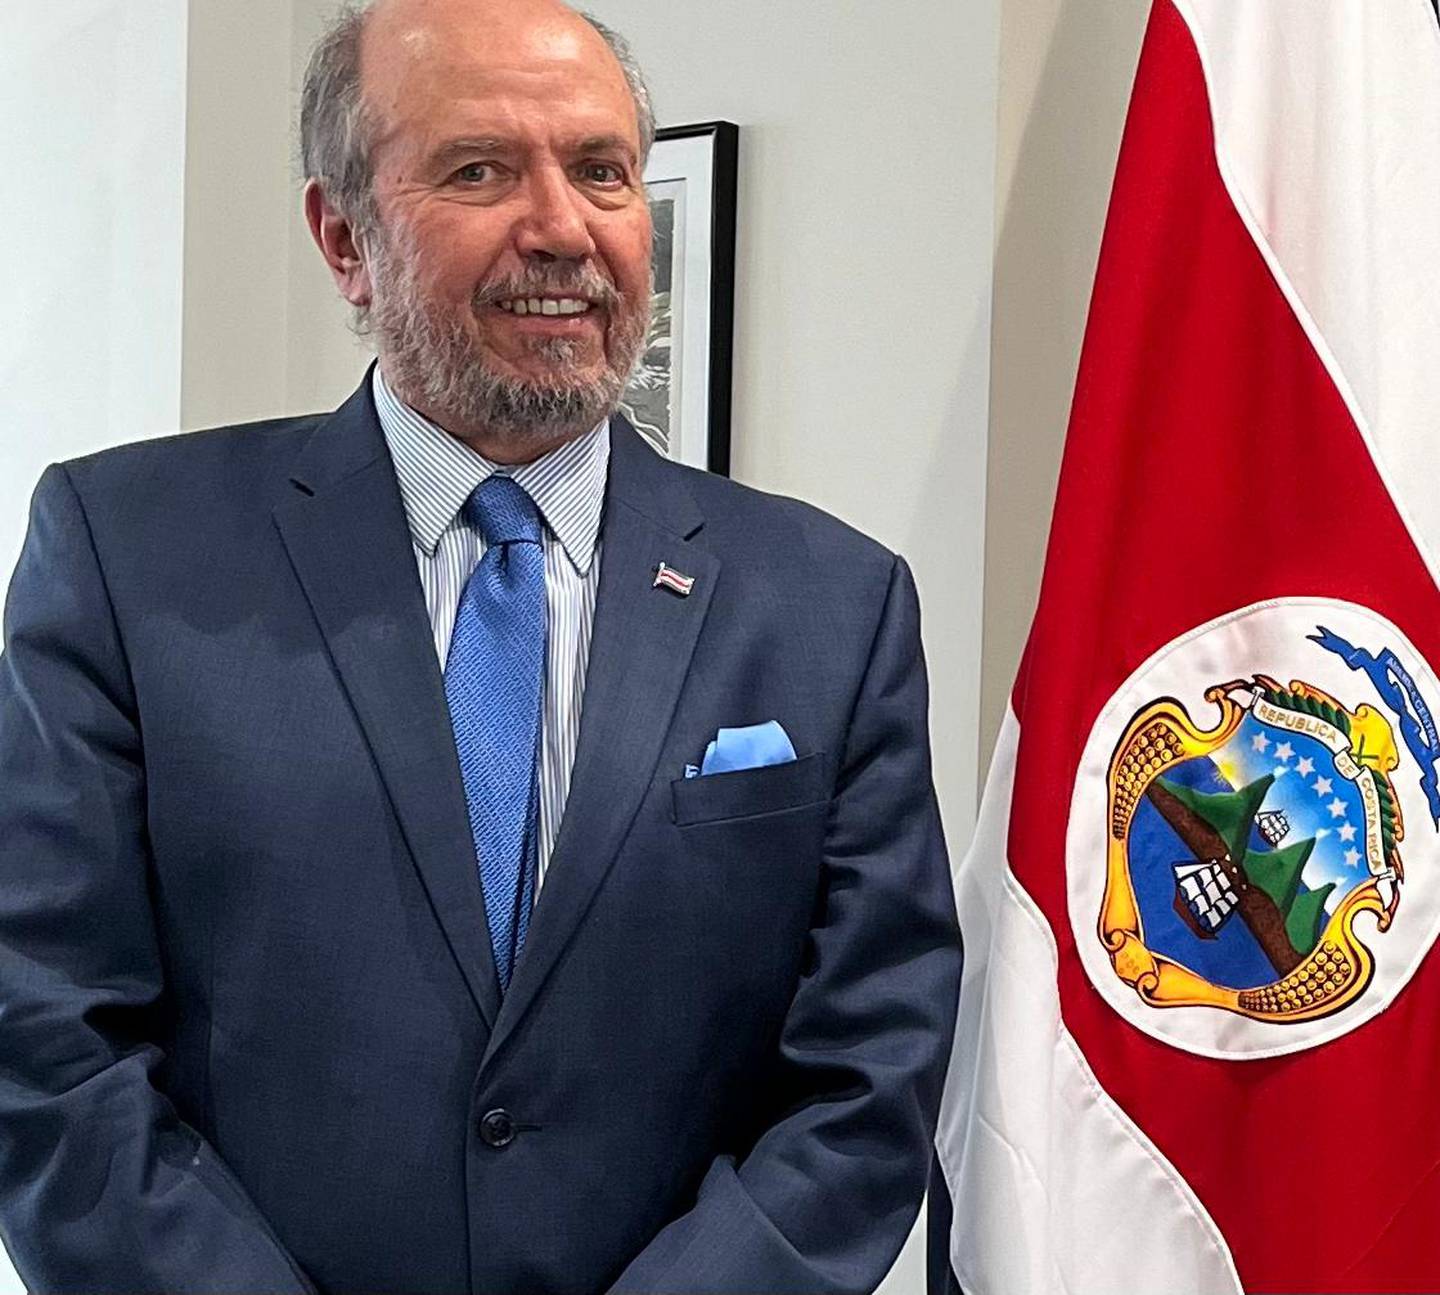 Rafael Ortiz Fábrega es el embajador de Costa Rica en Reino Unido desde 2018. Él fue presidente de Liga Deportiva Alajuelense entre 2002 y 2006.